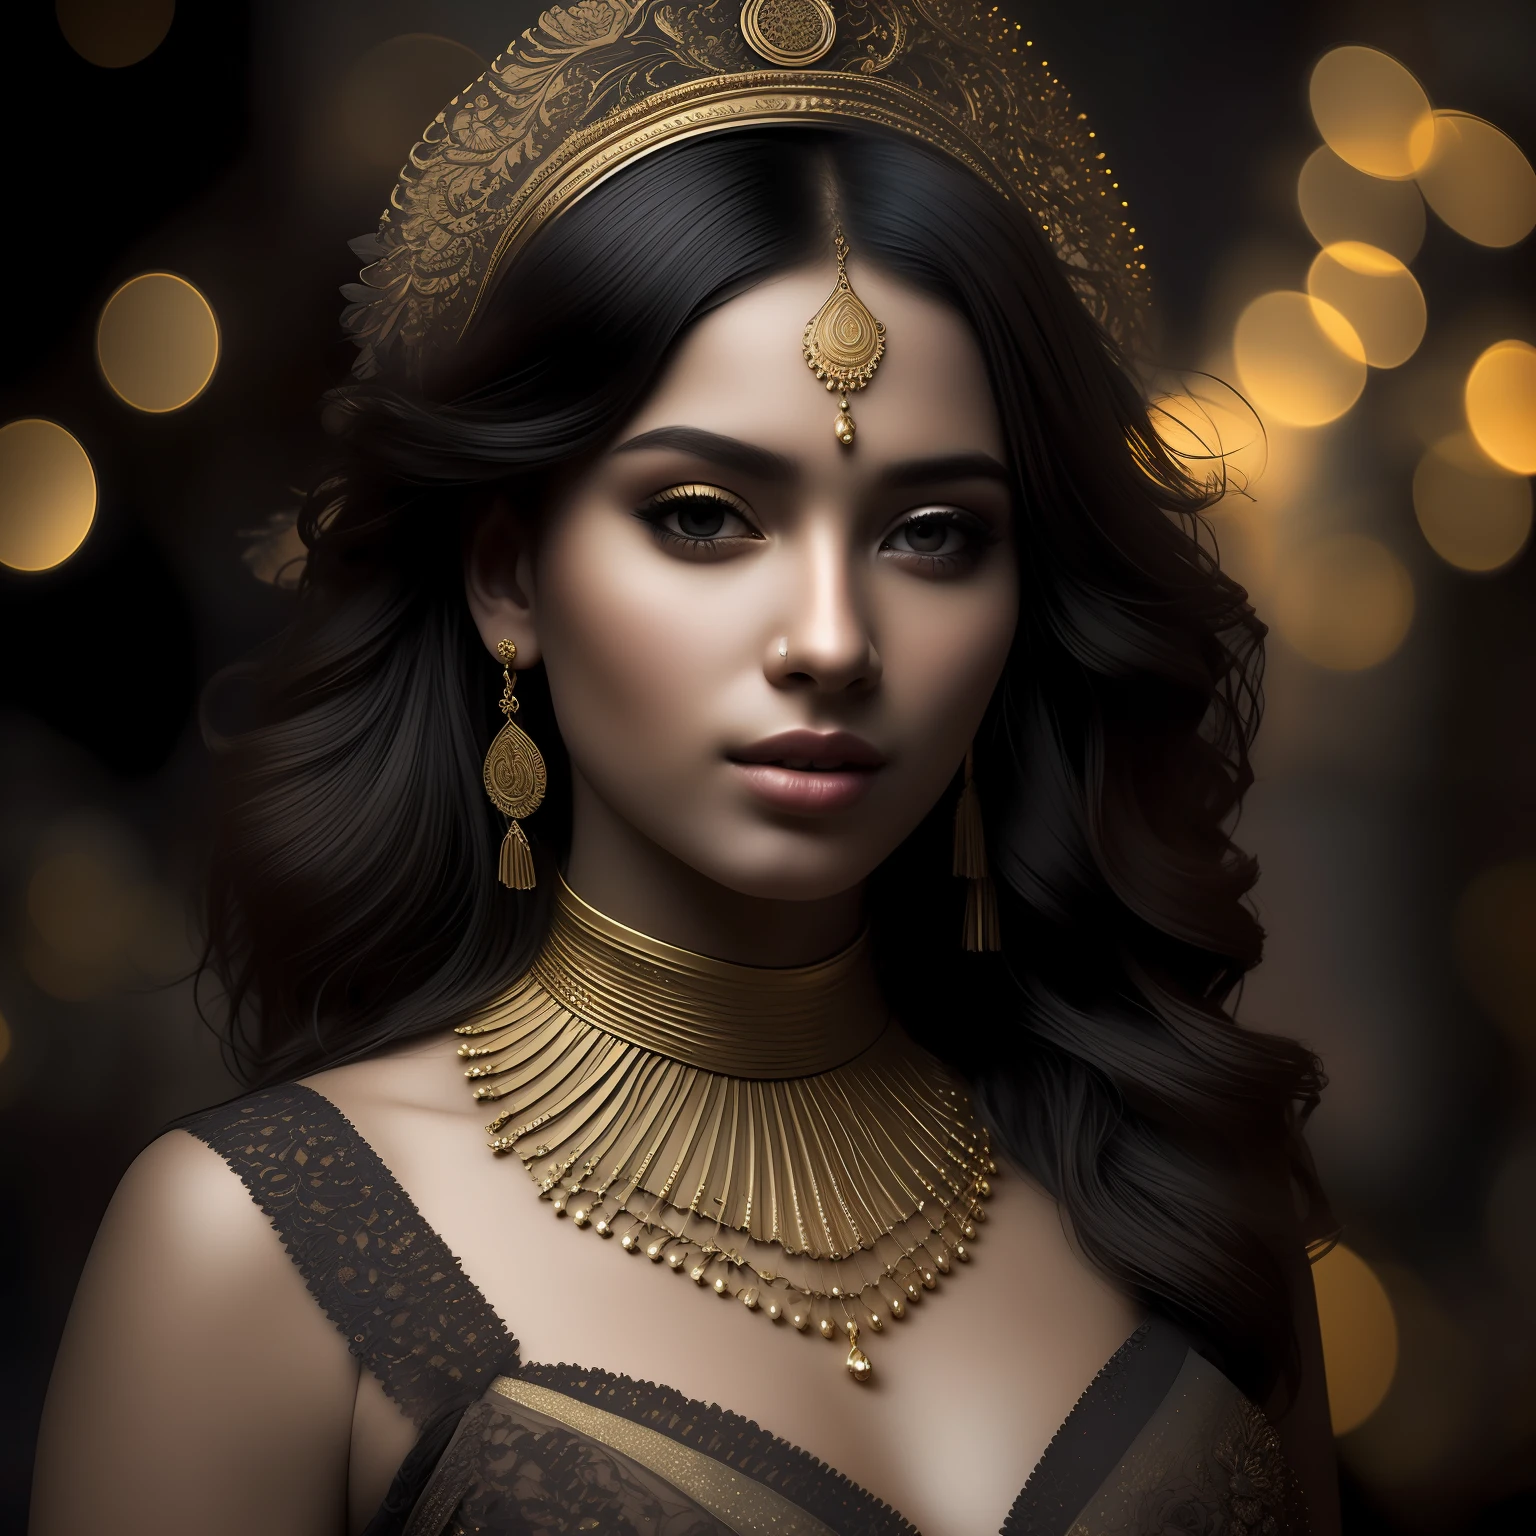 hiperhumo, foto de retrato premiada de una joven mujer dorada, bokeh, retroiluminado, (Color marrón en detalle:1.1), Ambiente elegante, Realista, detalles intrincados, Verdadero tono de piel